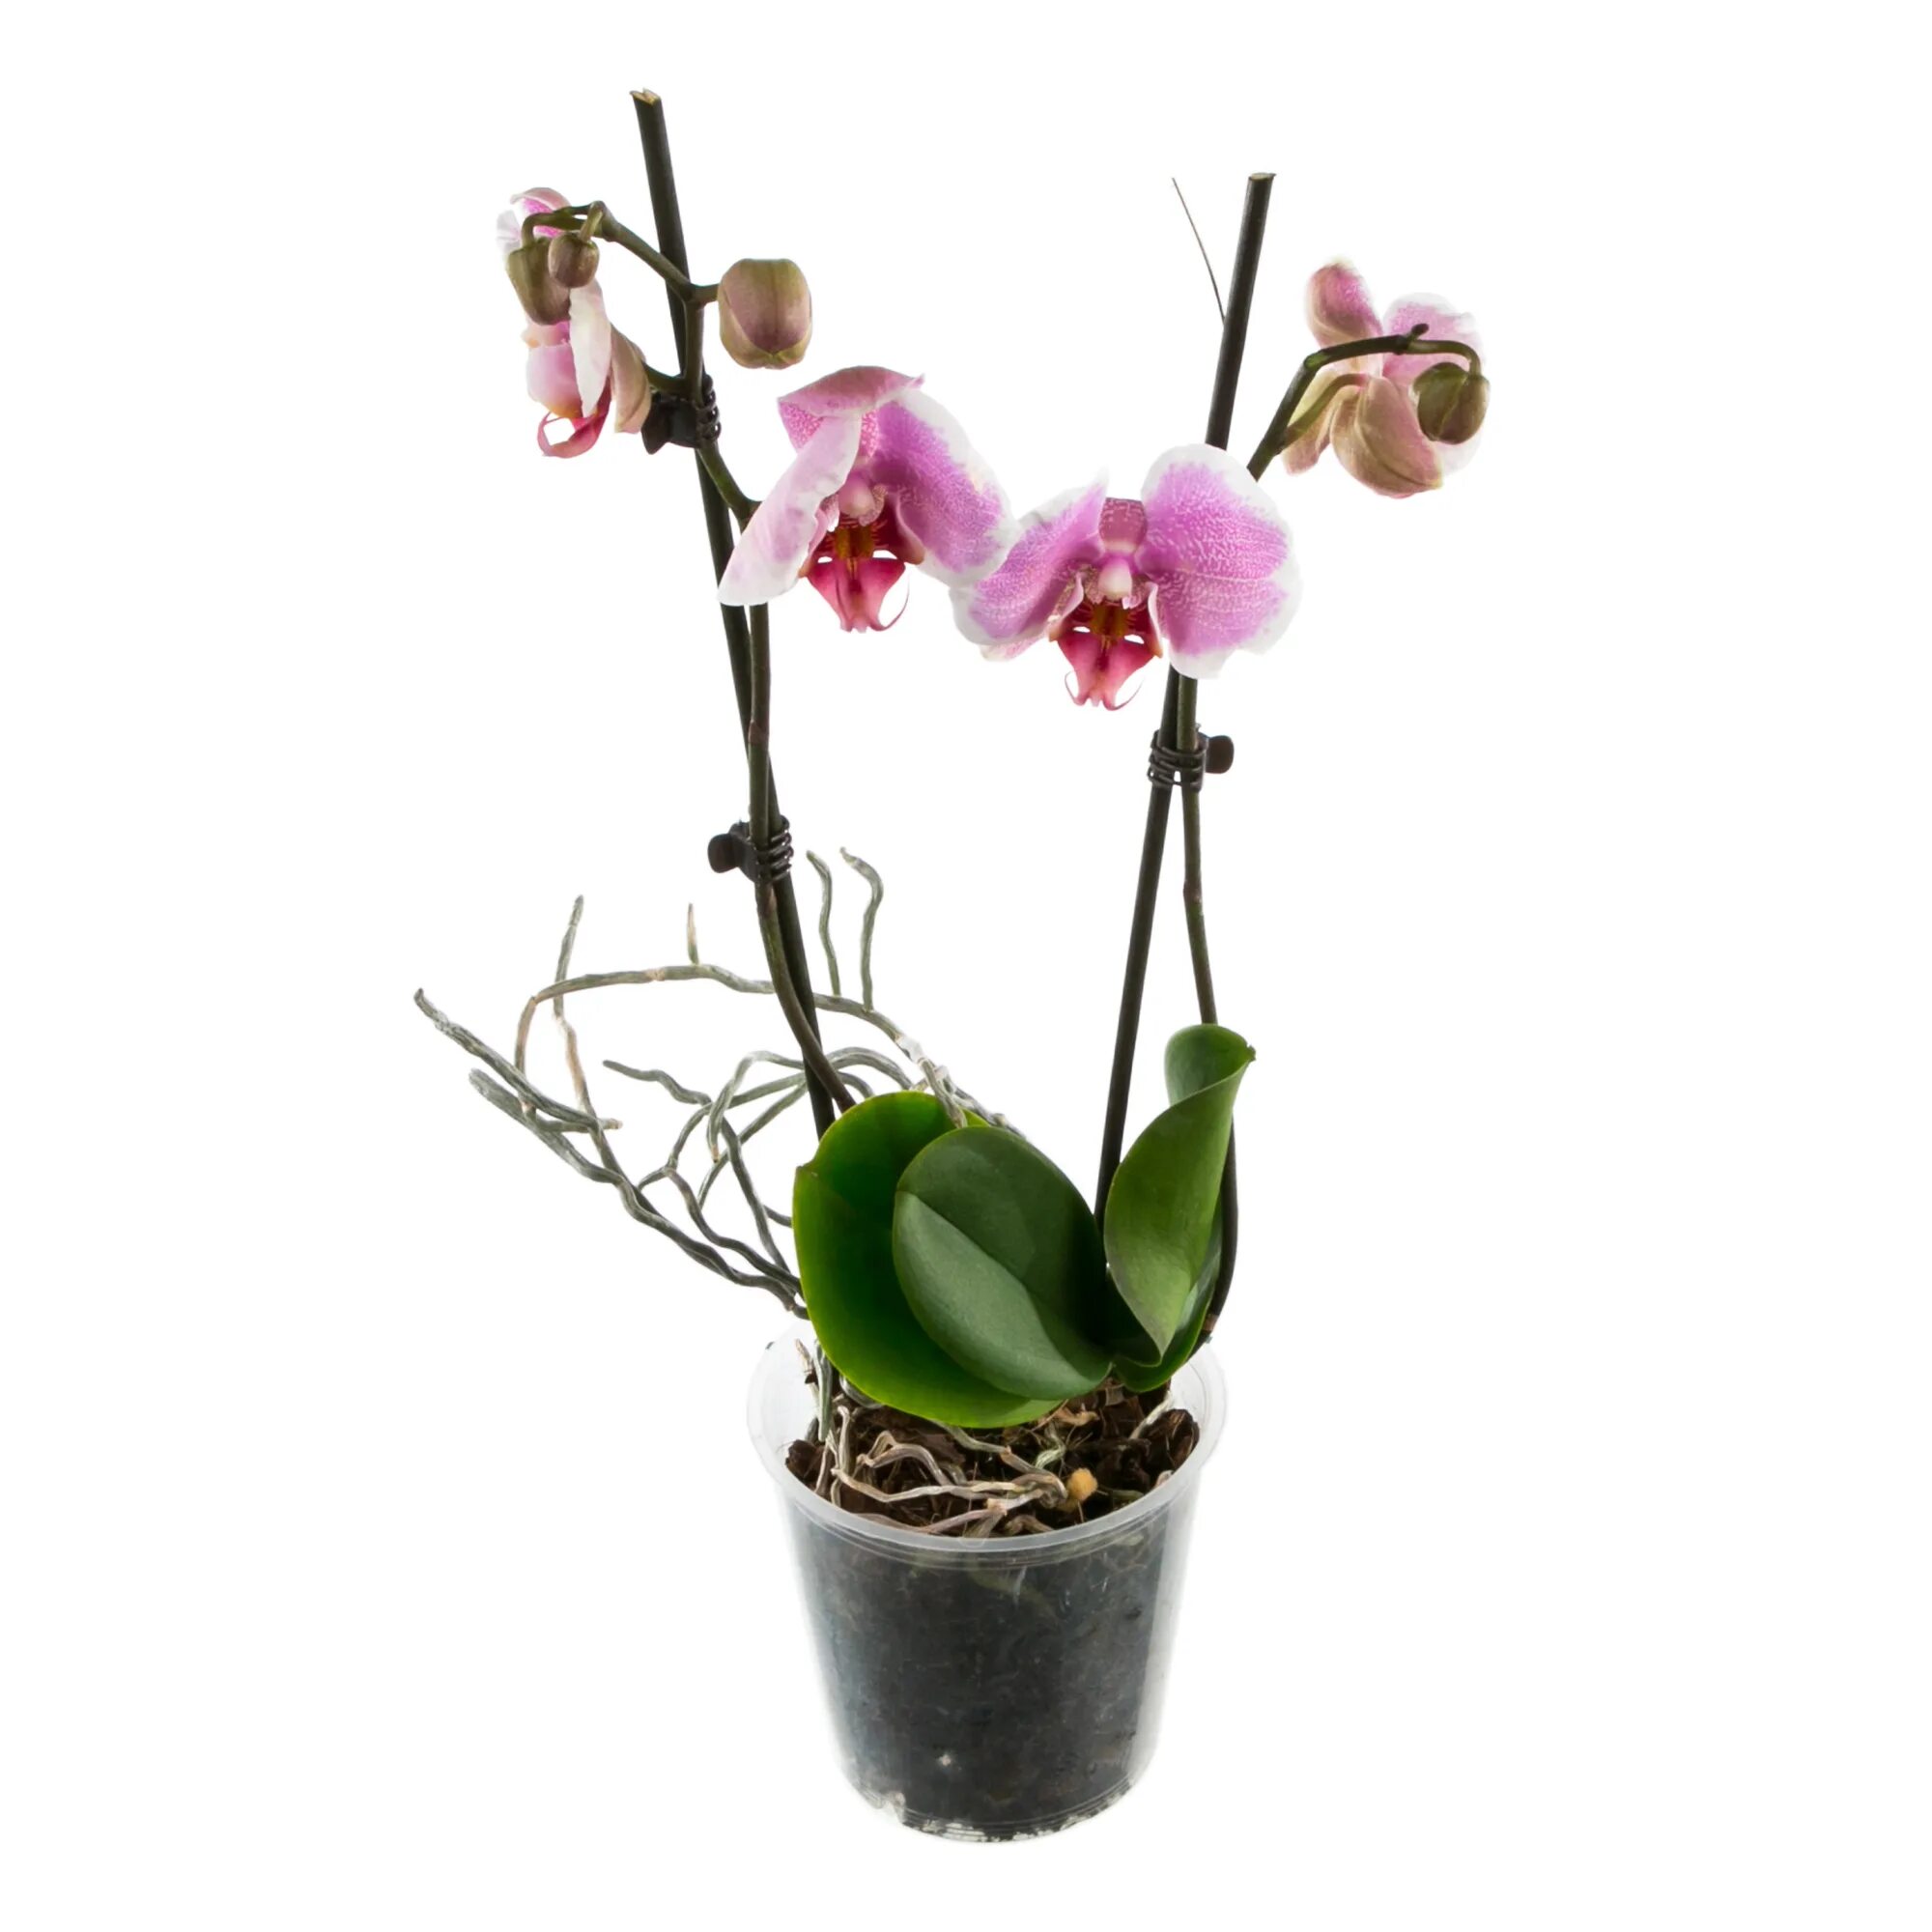 Орхидея купить нижний новгород в горшке. Орхидея фаленопсис микс. Фаленопсис мини микс. Орхидеи в Леруа Мерлен. Орхидея фаленопсис мини микс.